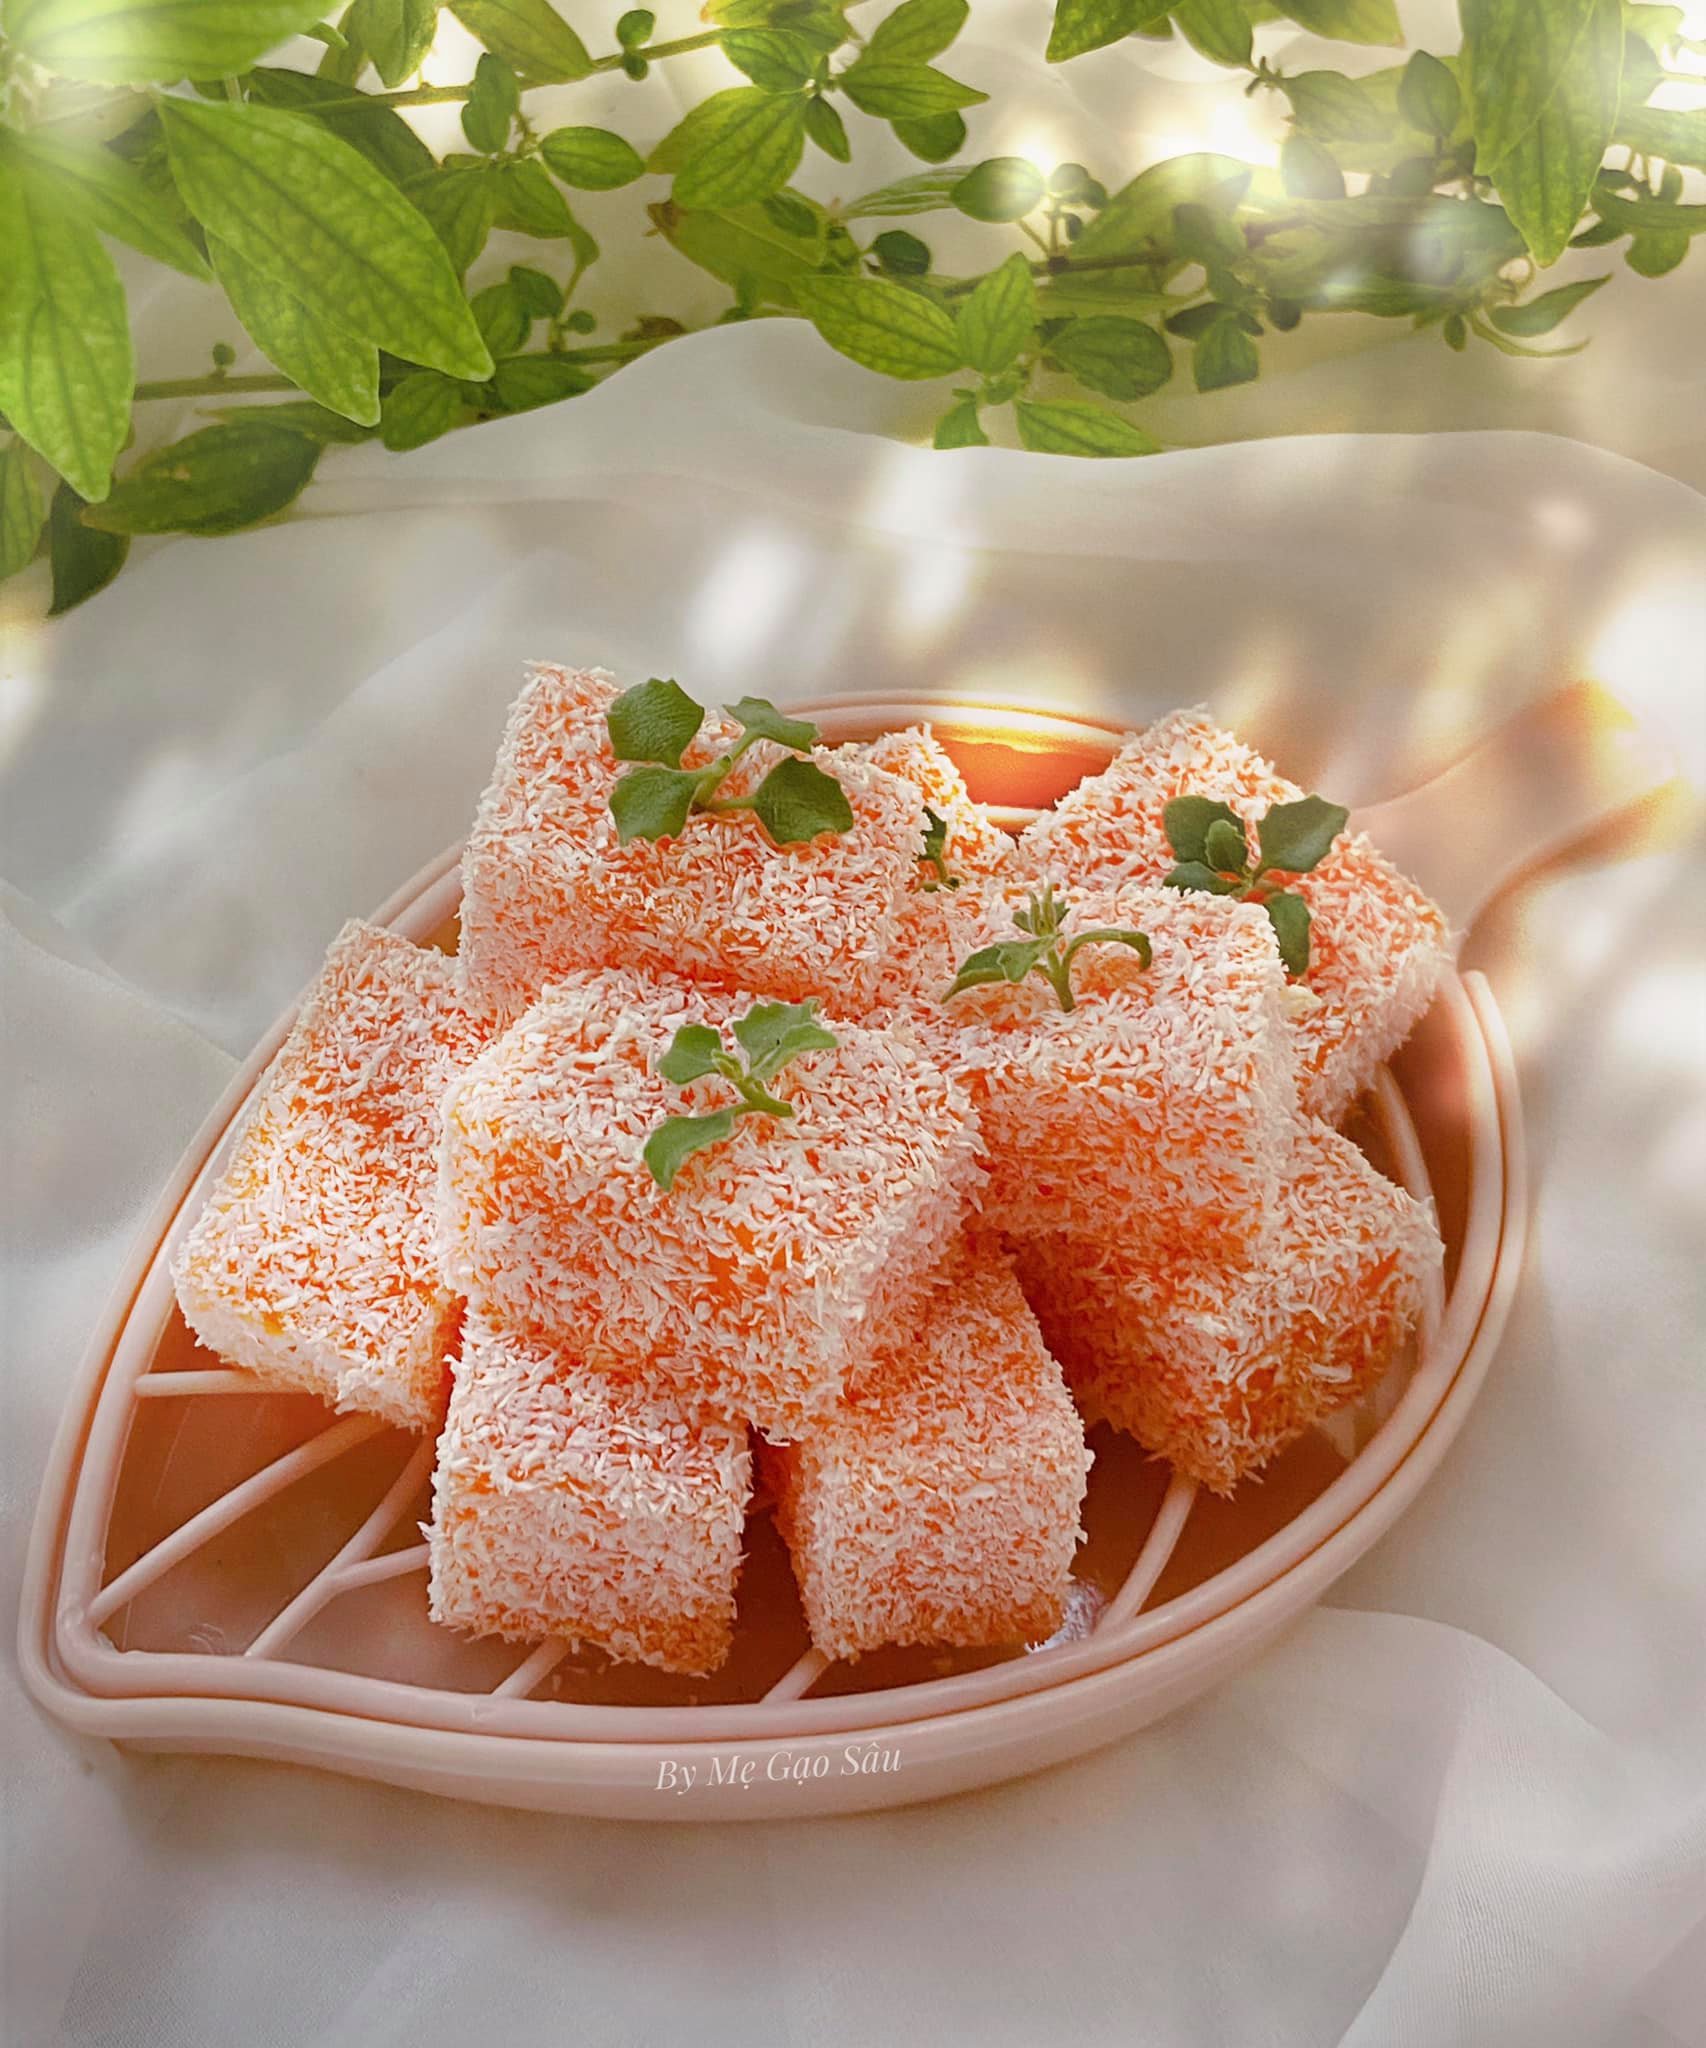 Bánh cà rốt đơn giản - Làm cho trẻ con ăn siêu mê mẩn! - Ảnh 1